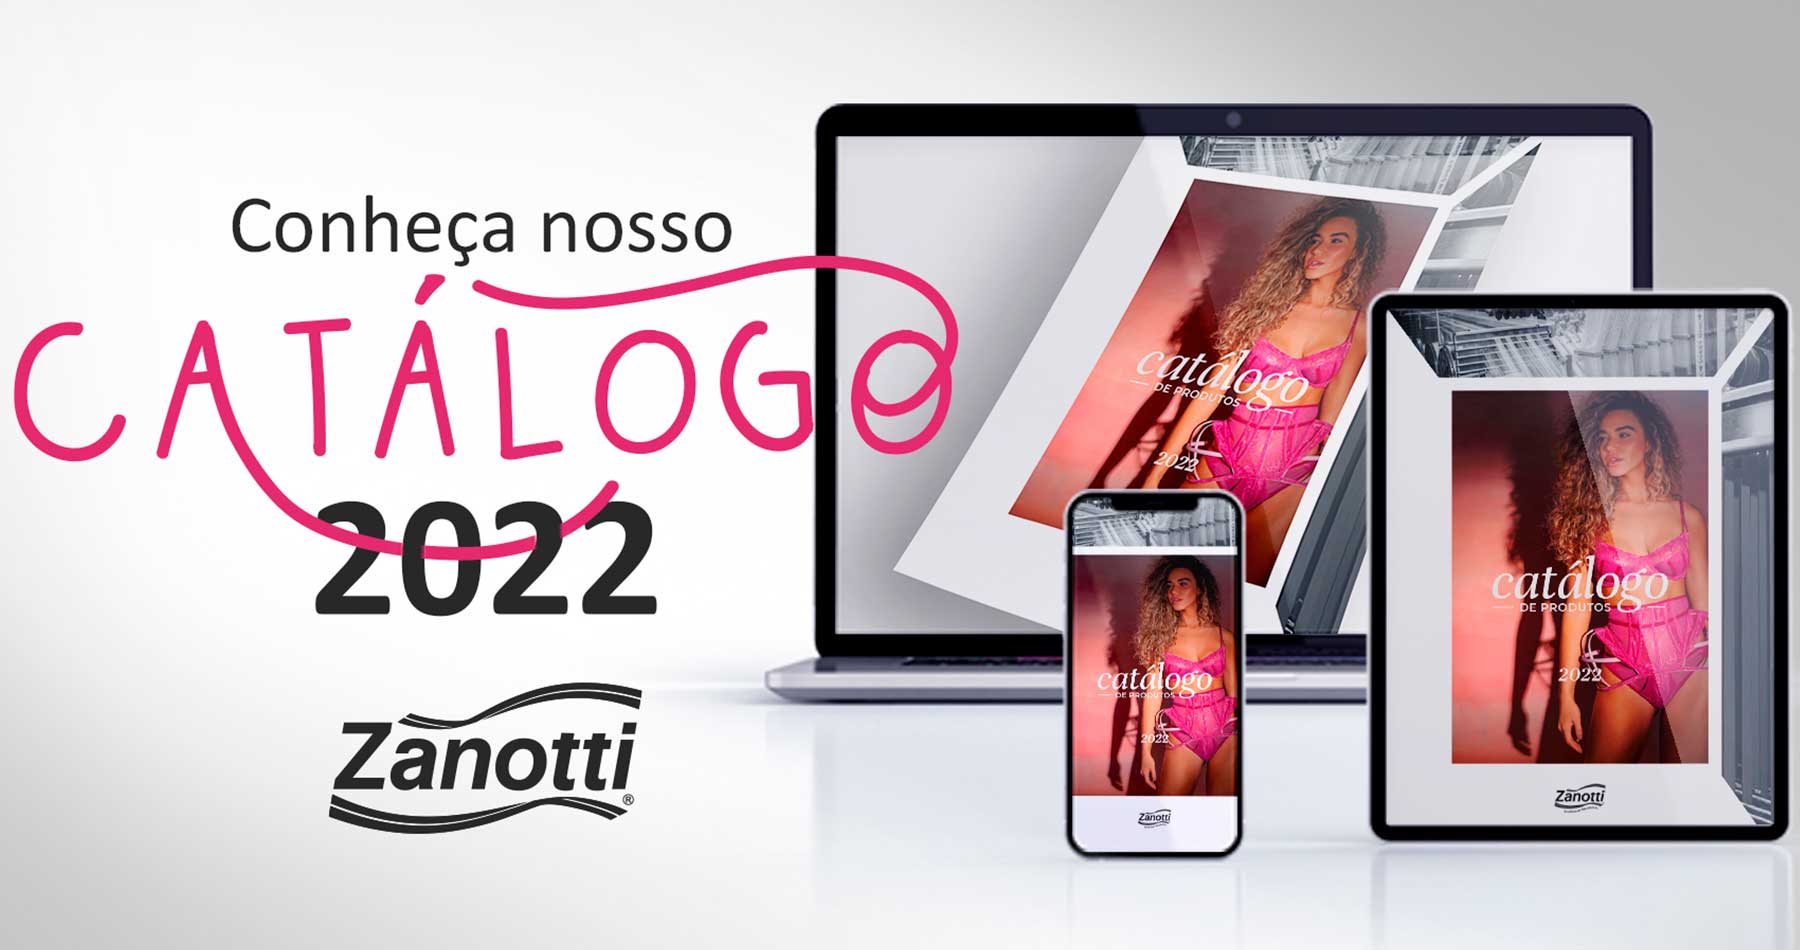 montagem para anunciar o catálogo 2022, com o novo mix de produtos da Zanotti